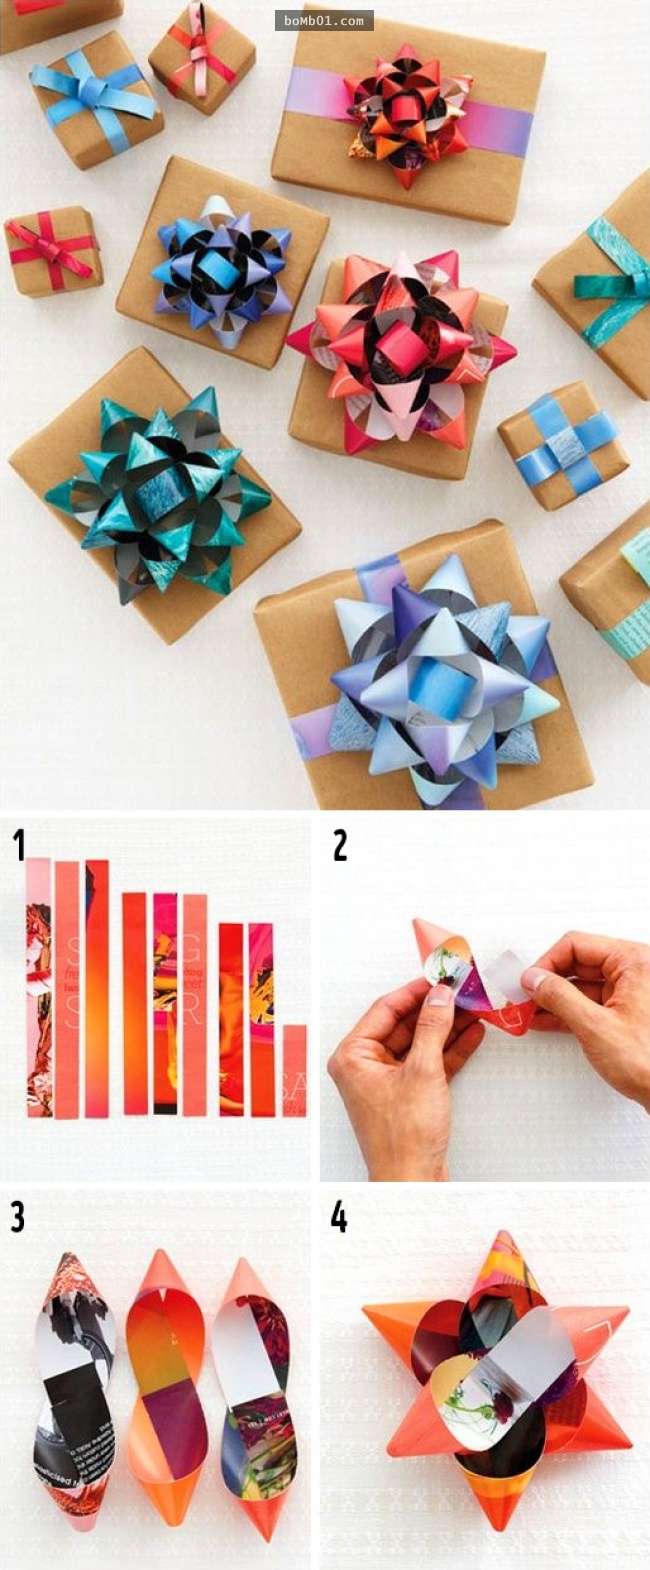 17種「普通禮物也會一秒變成精緻禮物」的妙點子創意包裝方法。